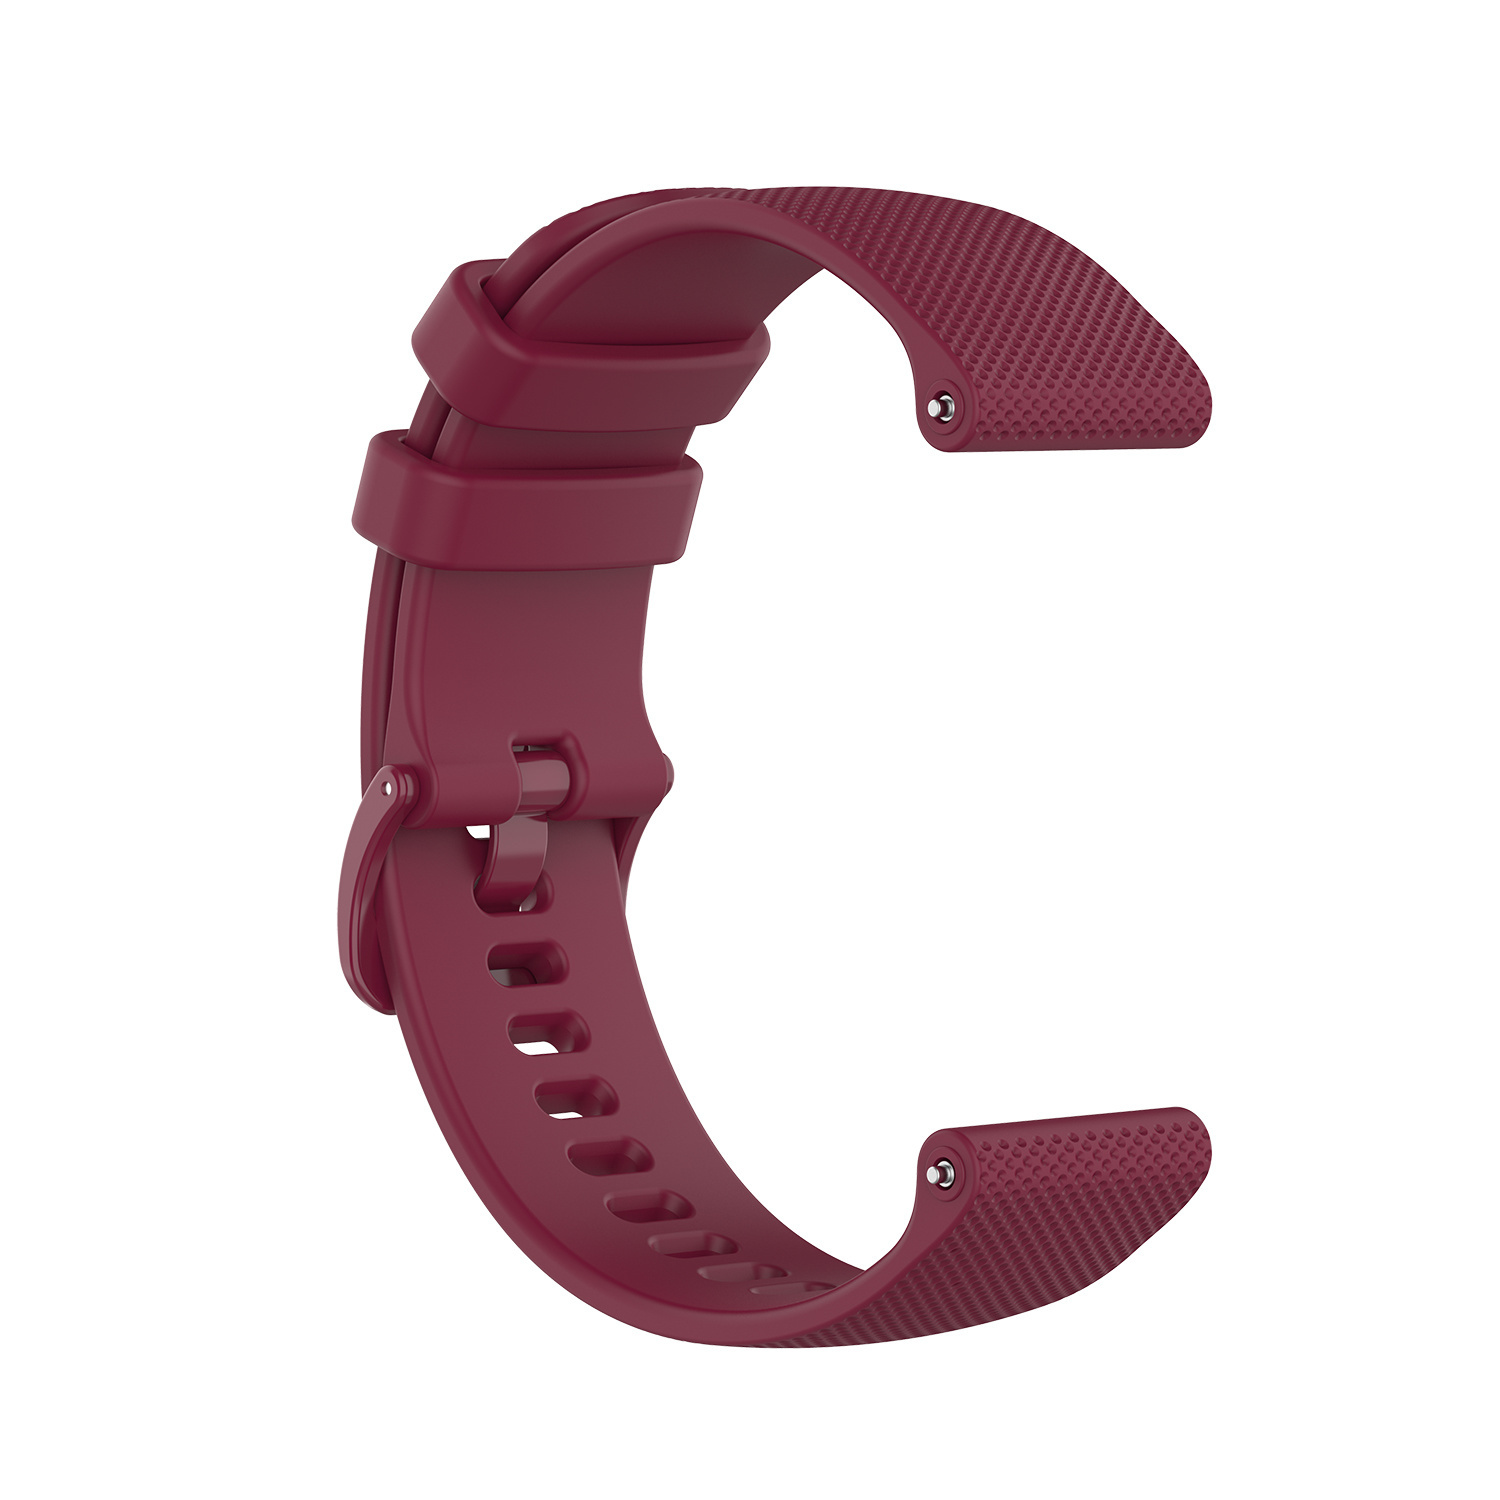 Samsung Galaxy Watch Sport Buckle Strap - Wine Red